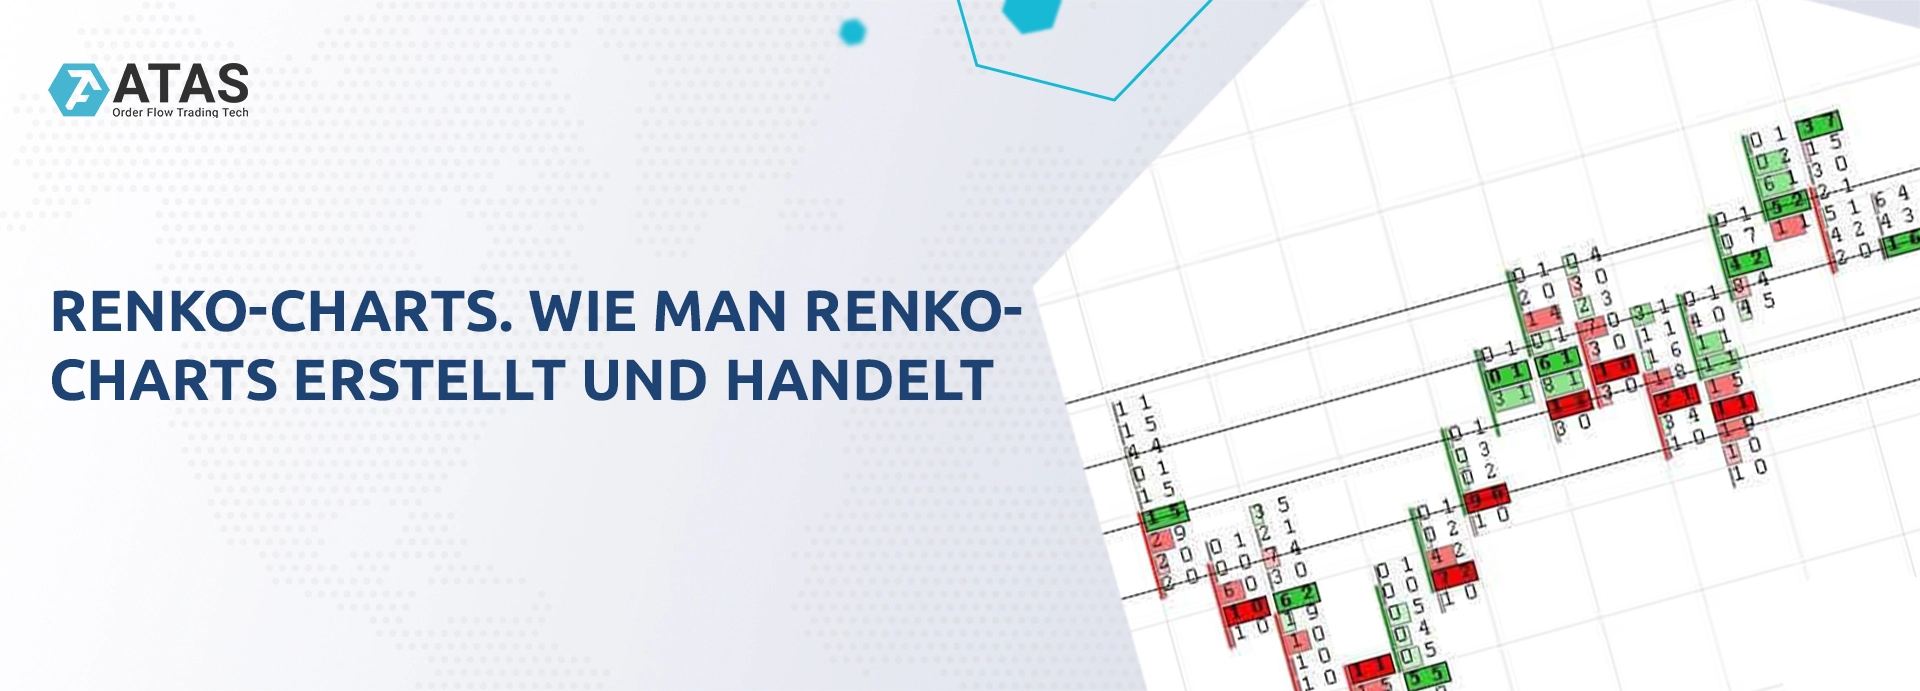 Renko-Charts. Wie man Renko-Charts erstellt und handelt